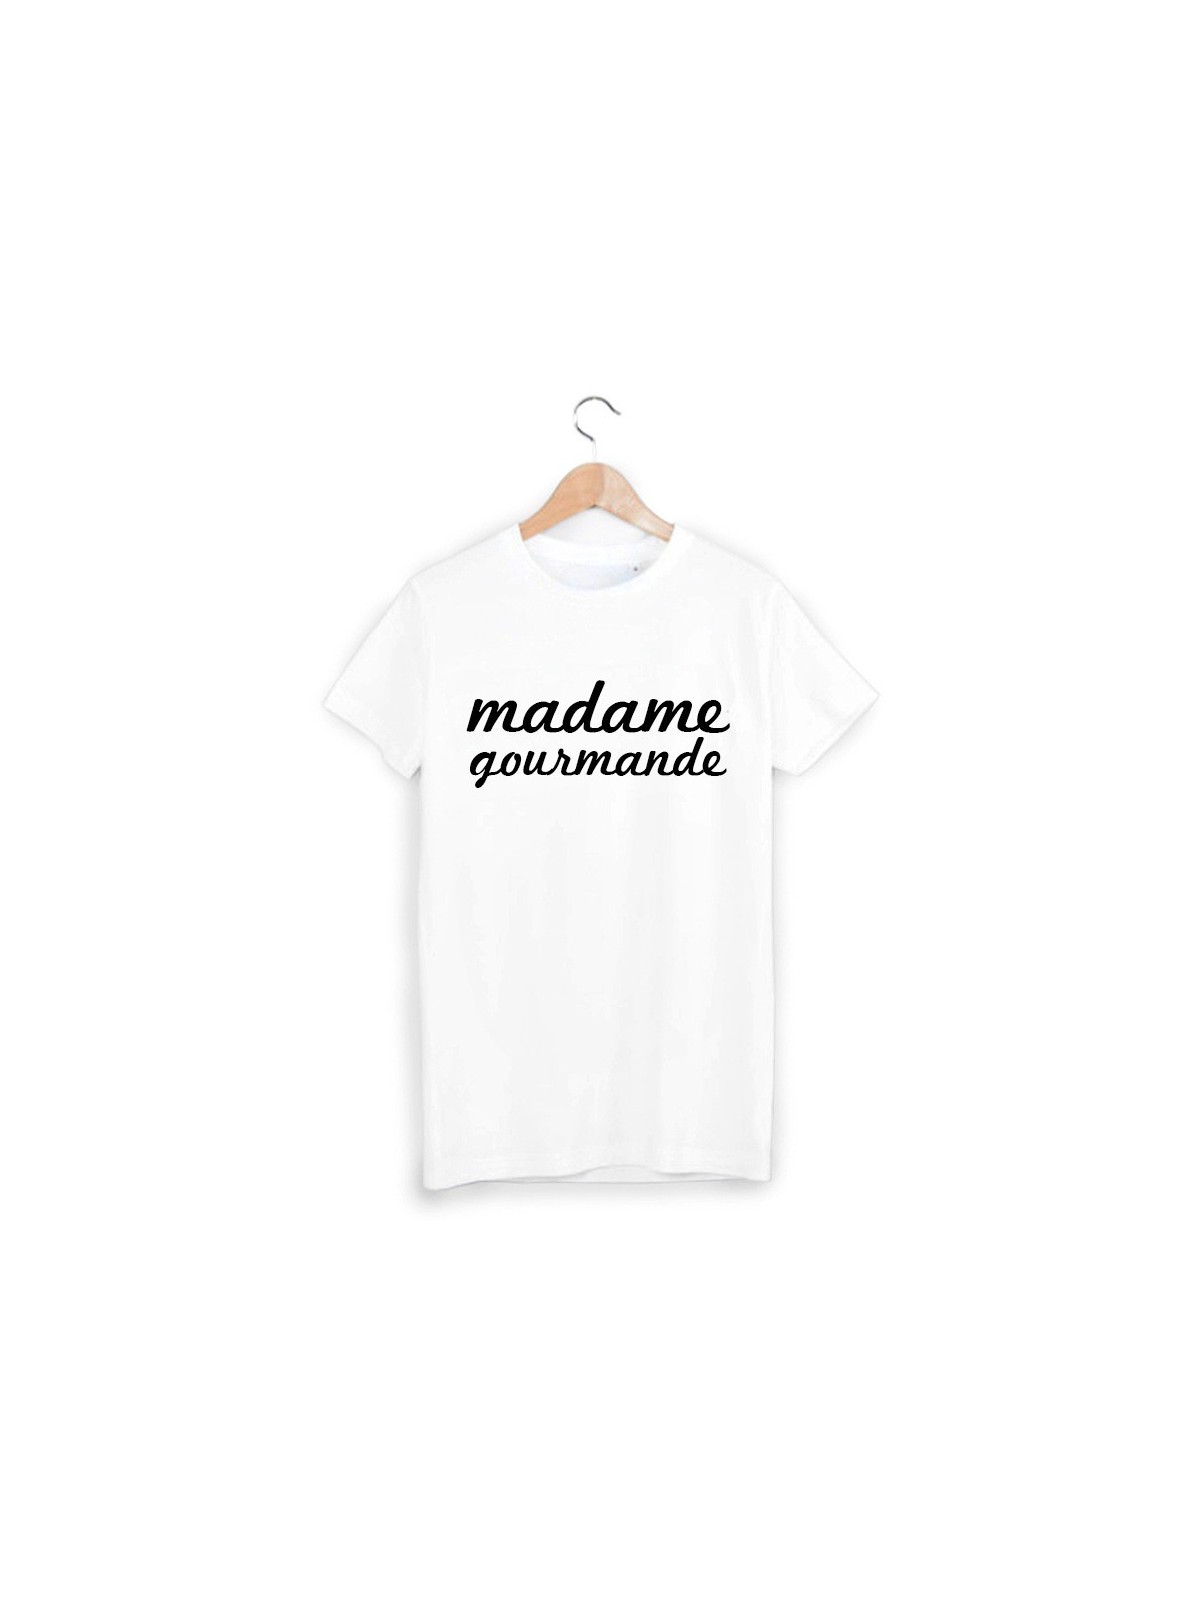 T-Shirt madame gourmande ref 1034